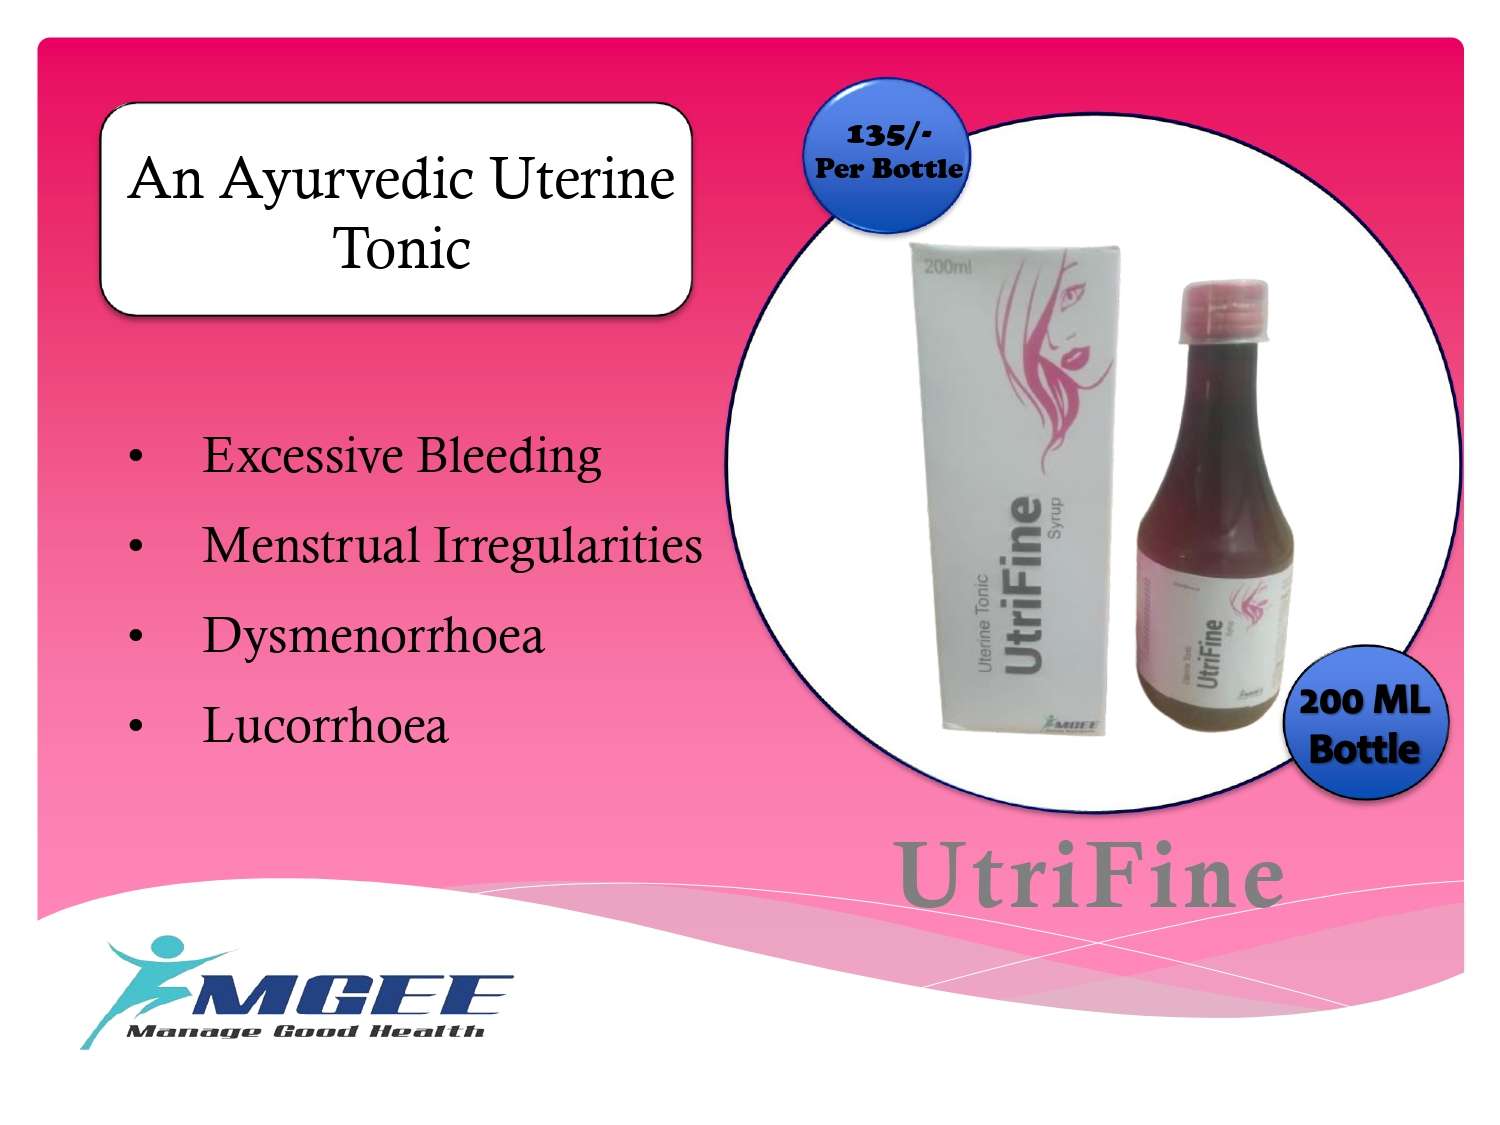 an ayurvedic uterine tonic